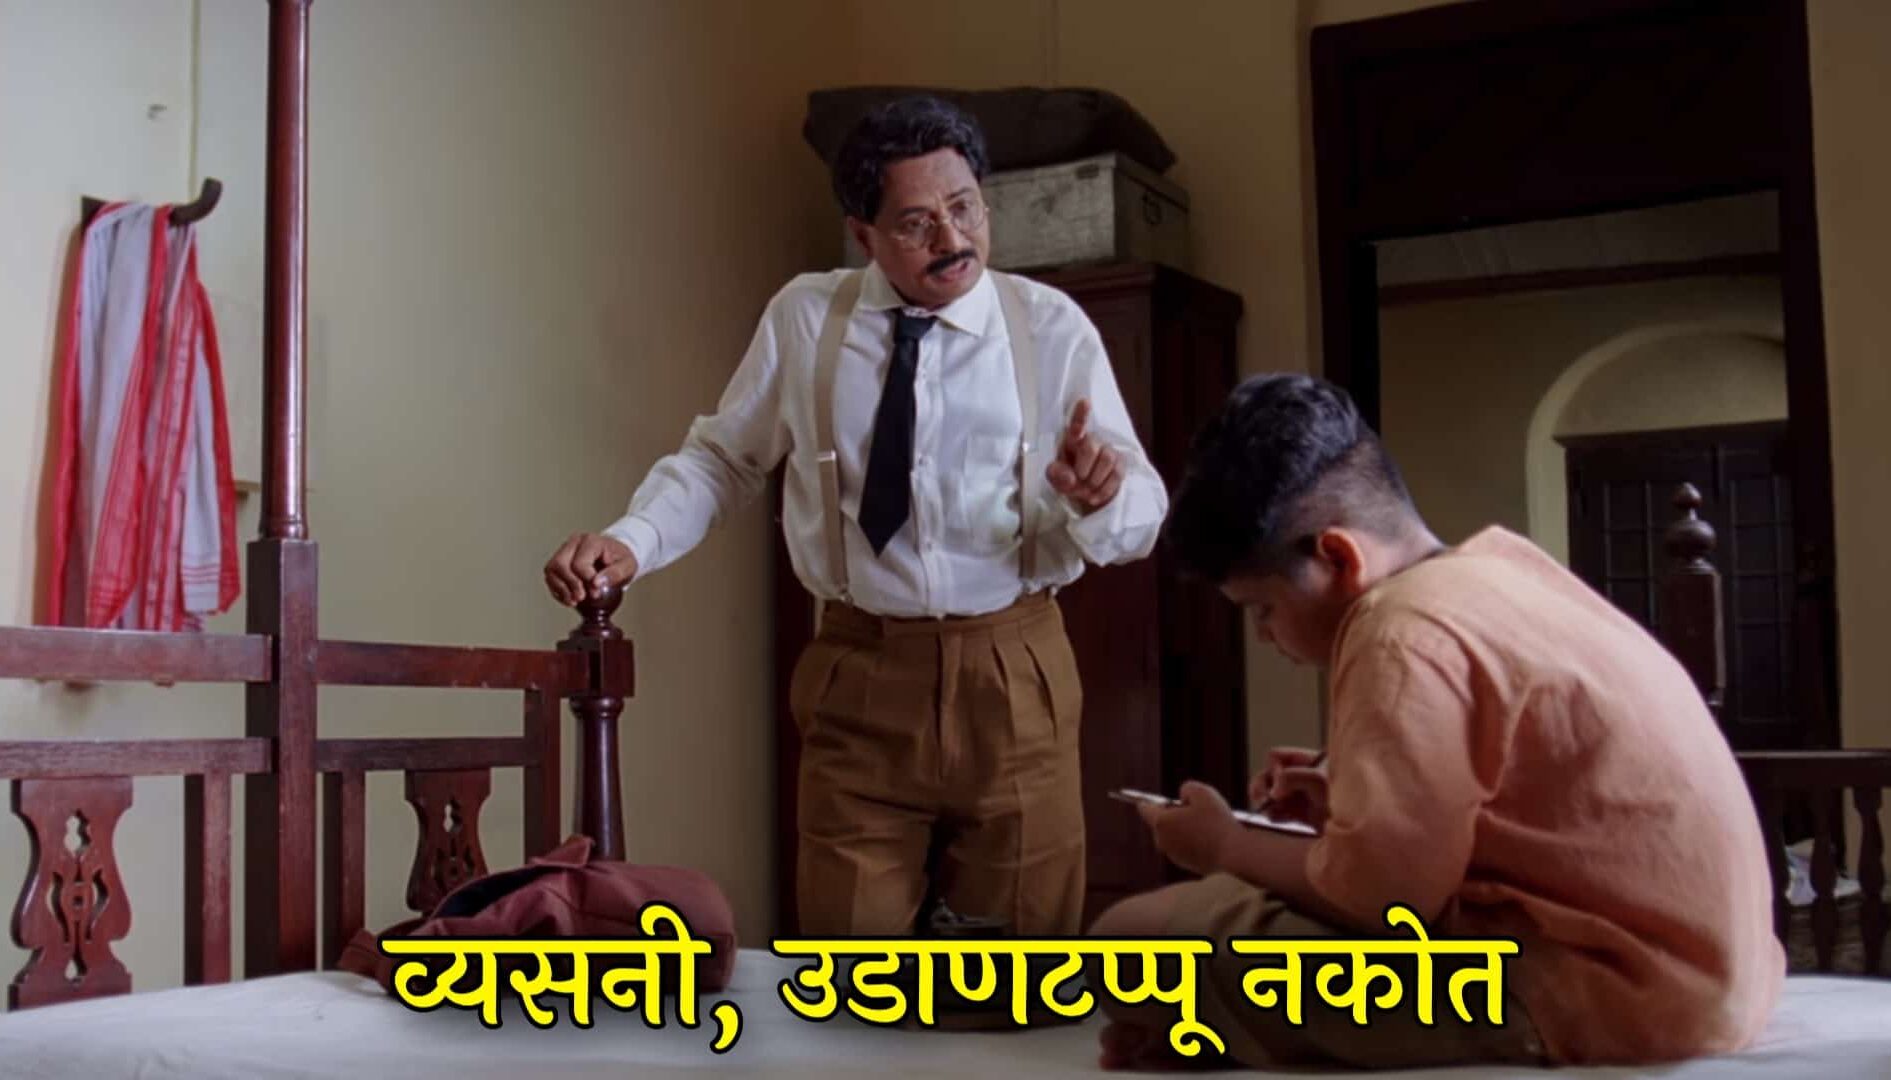 Nandu Madhav Marathi Movie Meme Templates